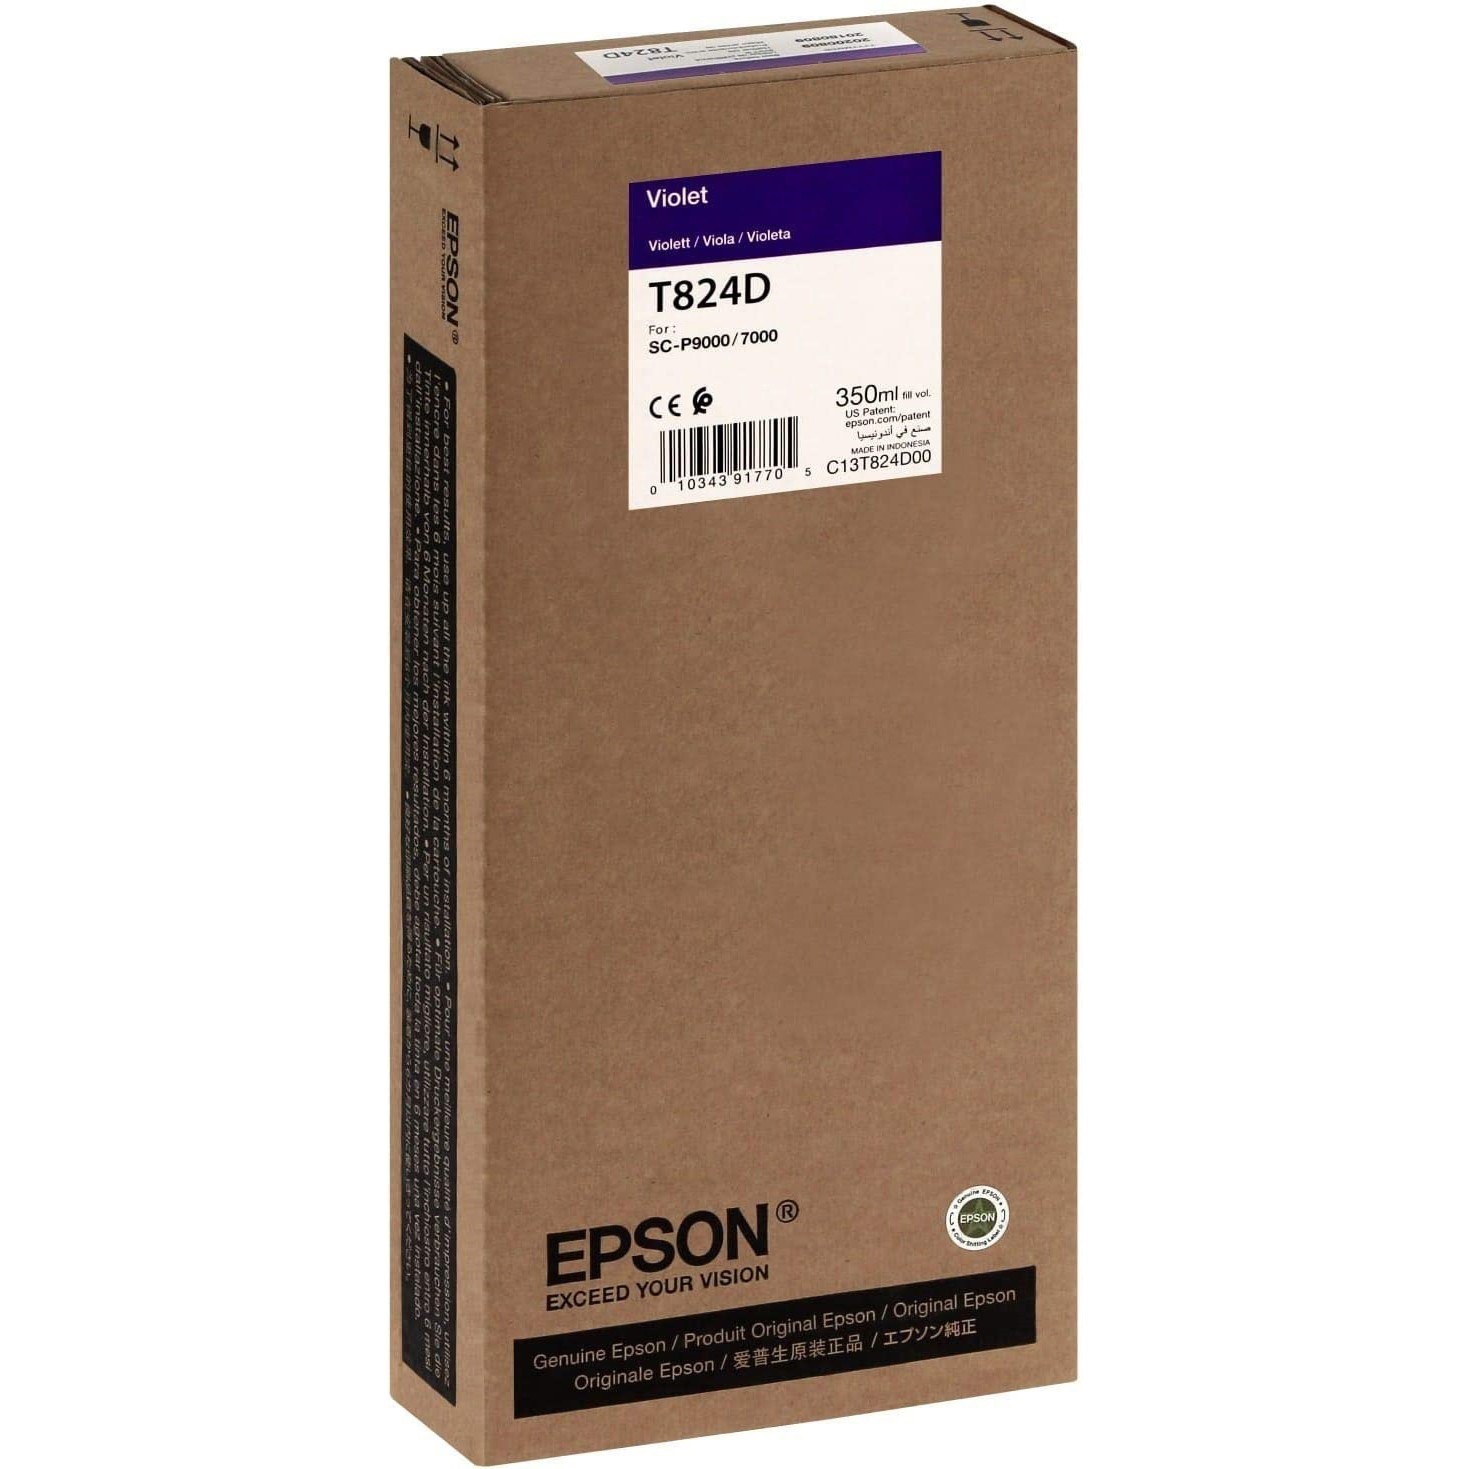 Original Epson T824D Violet Ink Cartridge (C13T824D00)